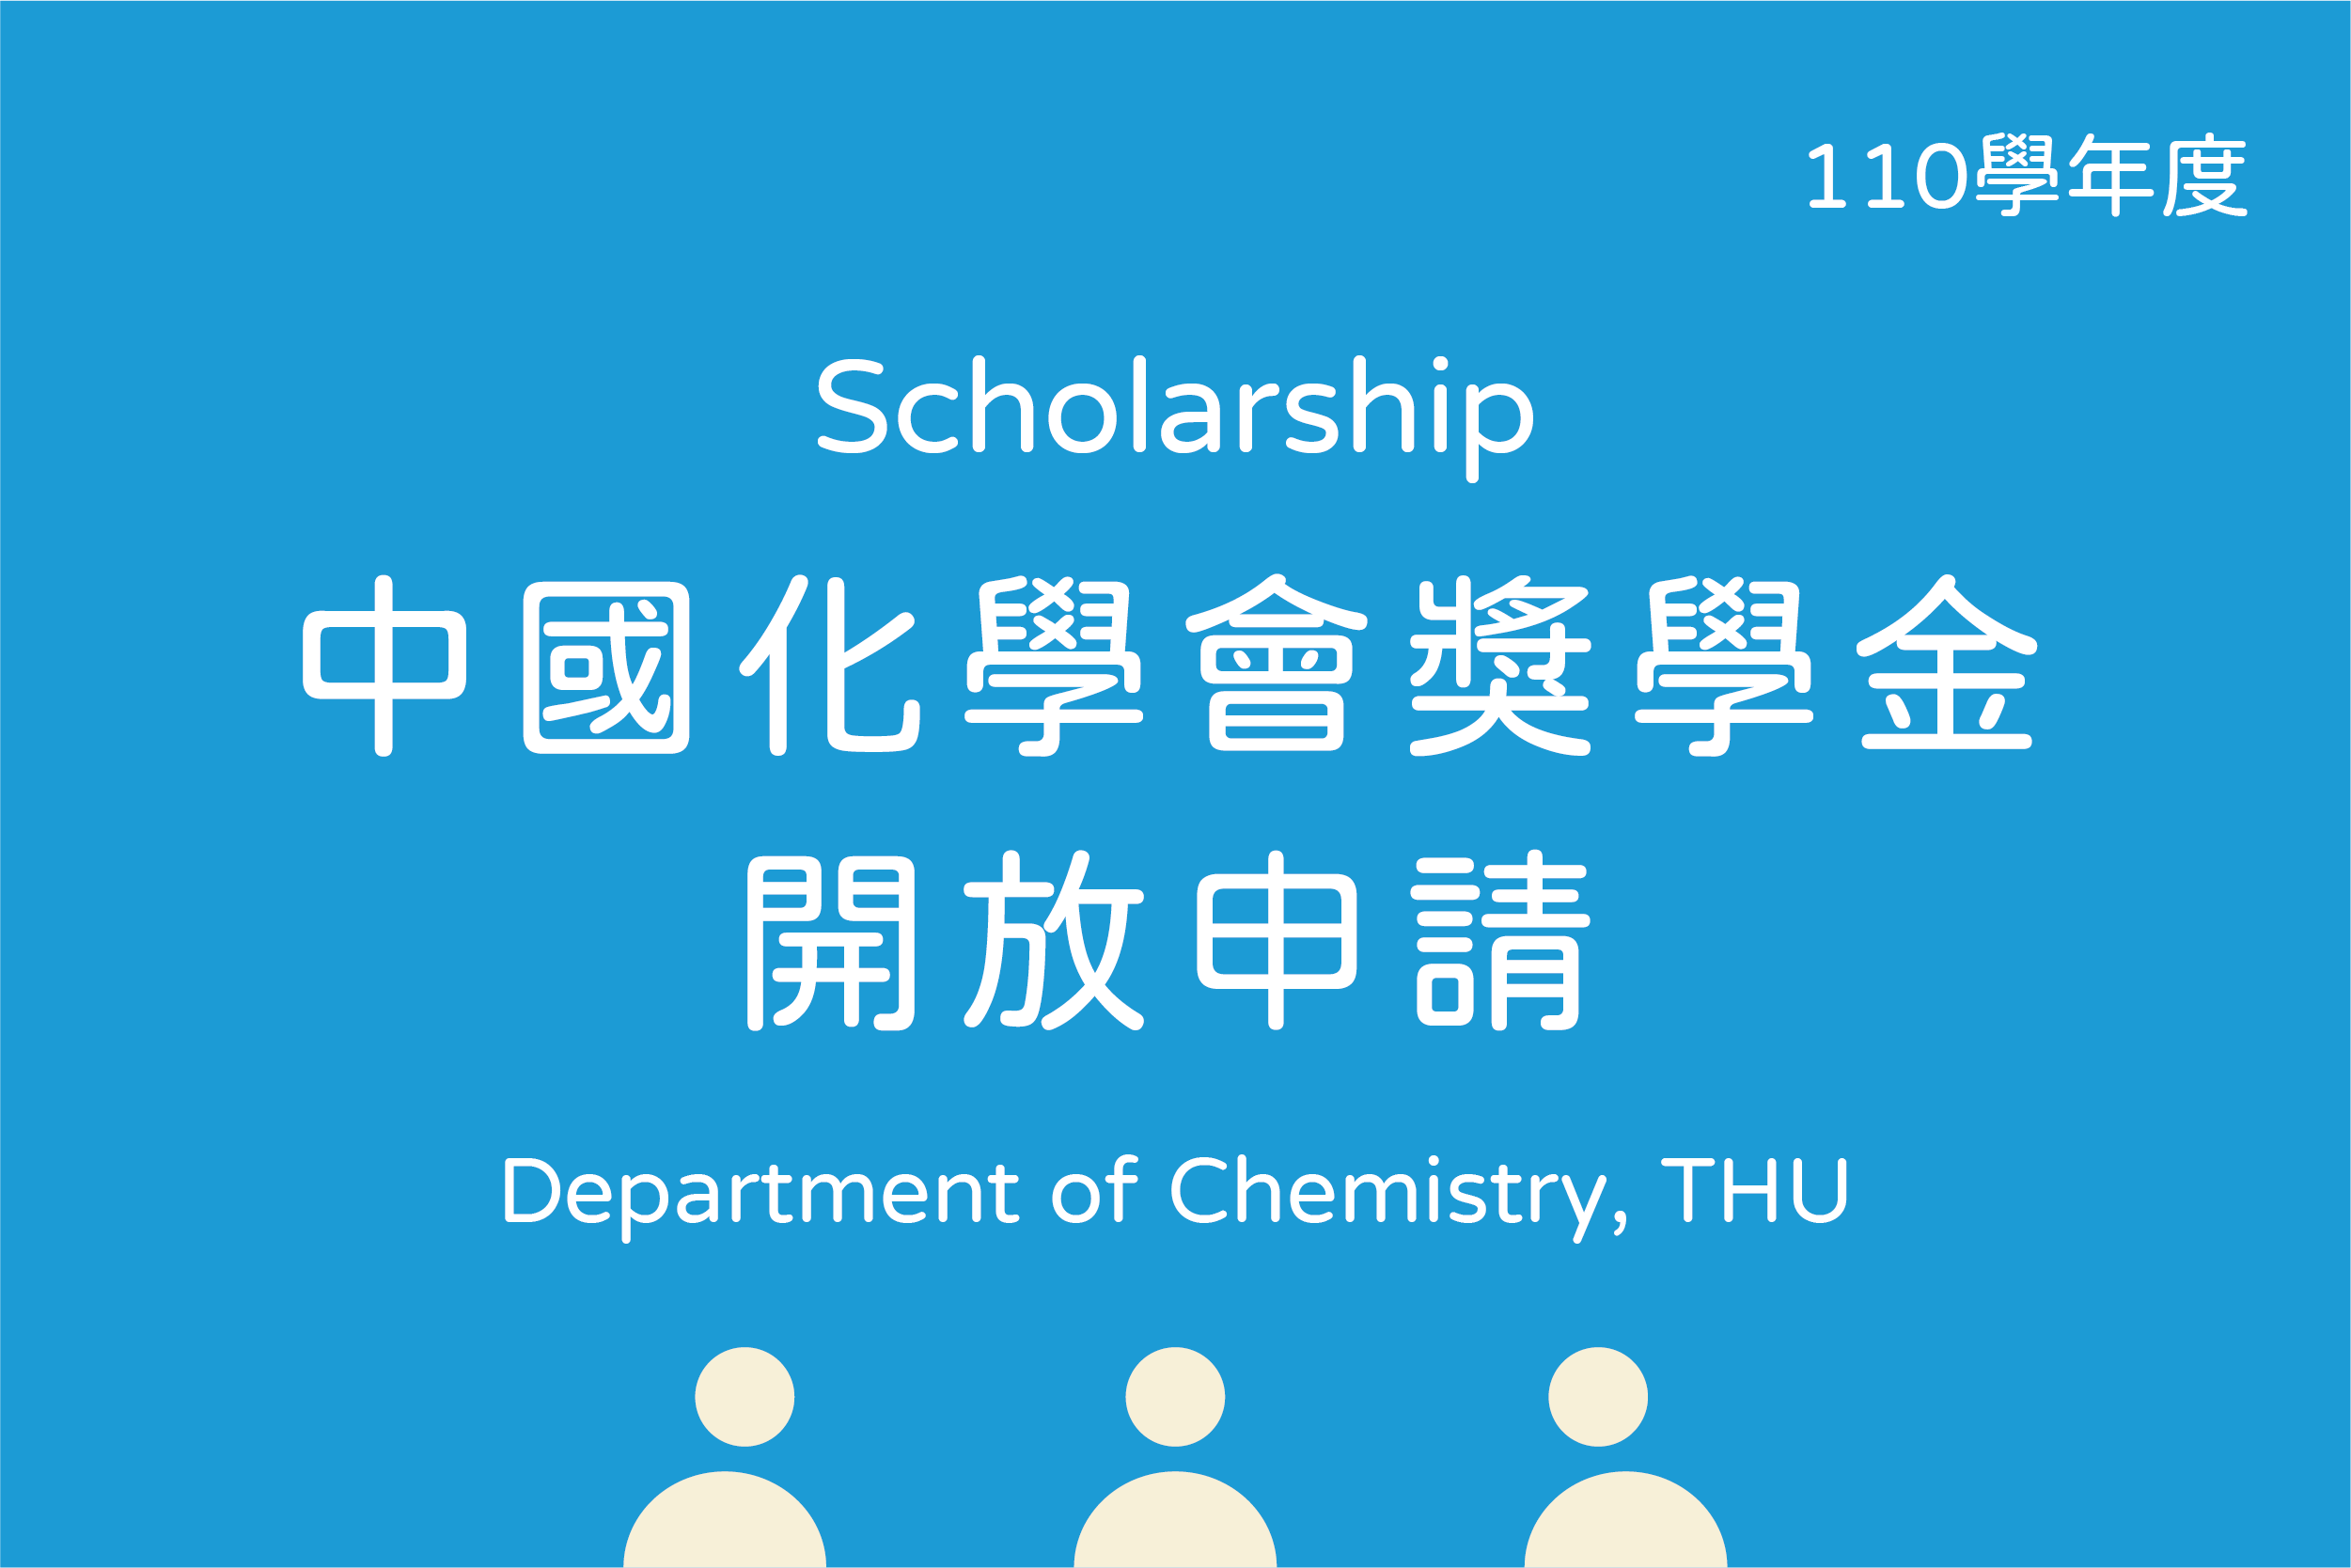 中國化學會設置「巴斯夫碩/博士生創新論文獎」辦法